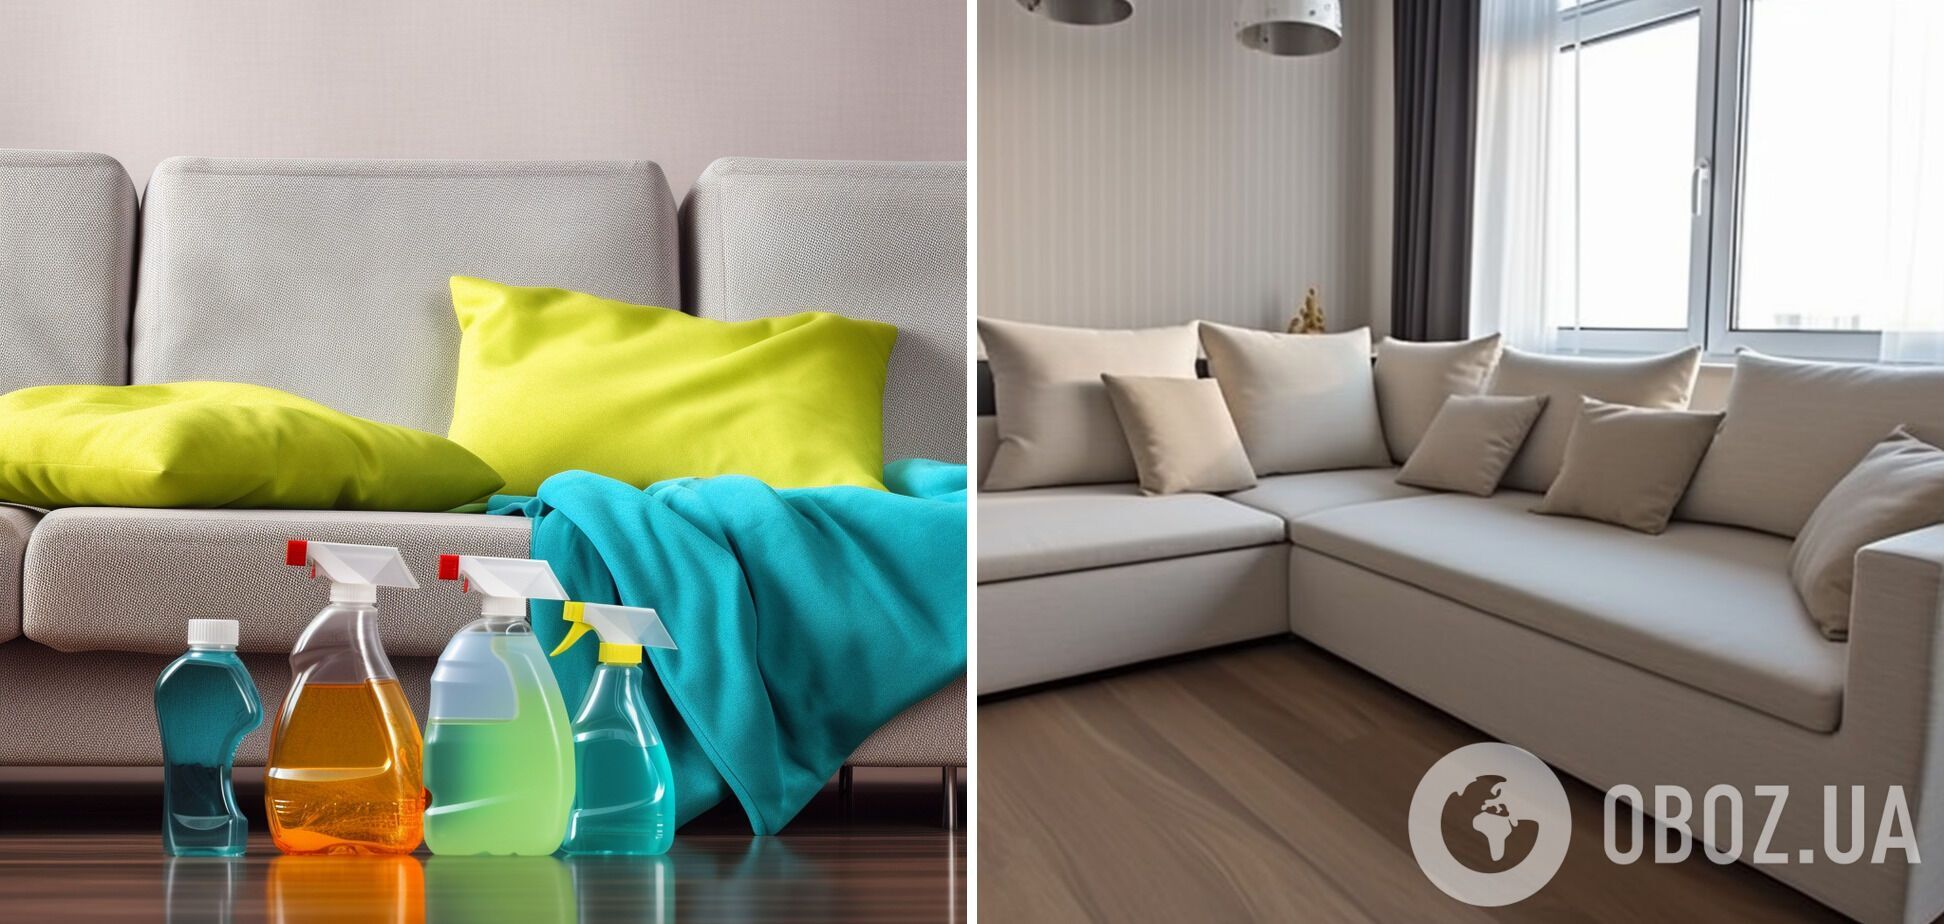 Меблі будуть як нові: чим відчистити плями на диванах